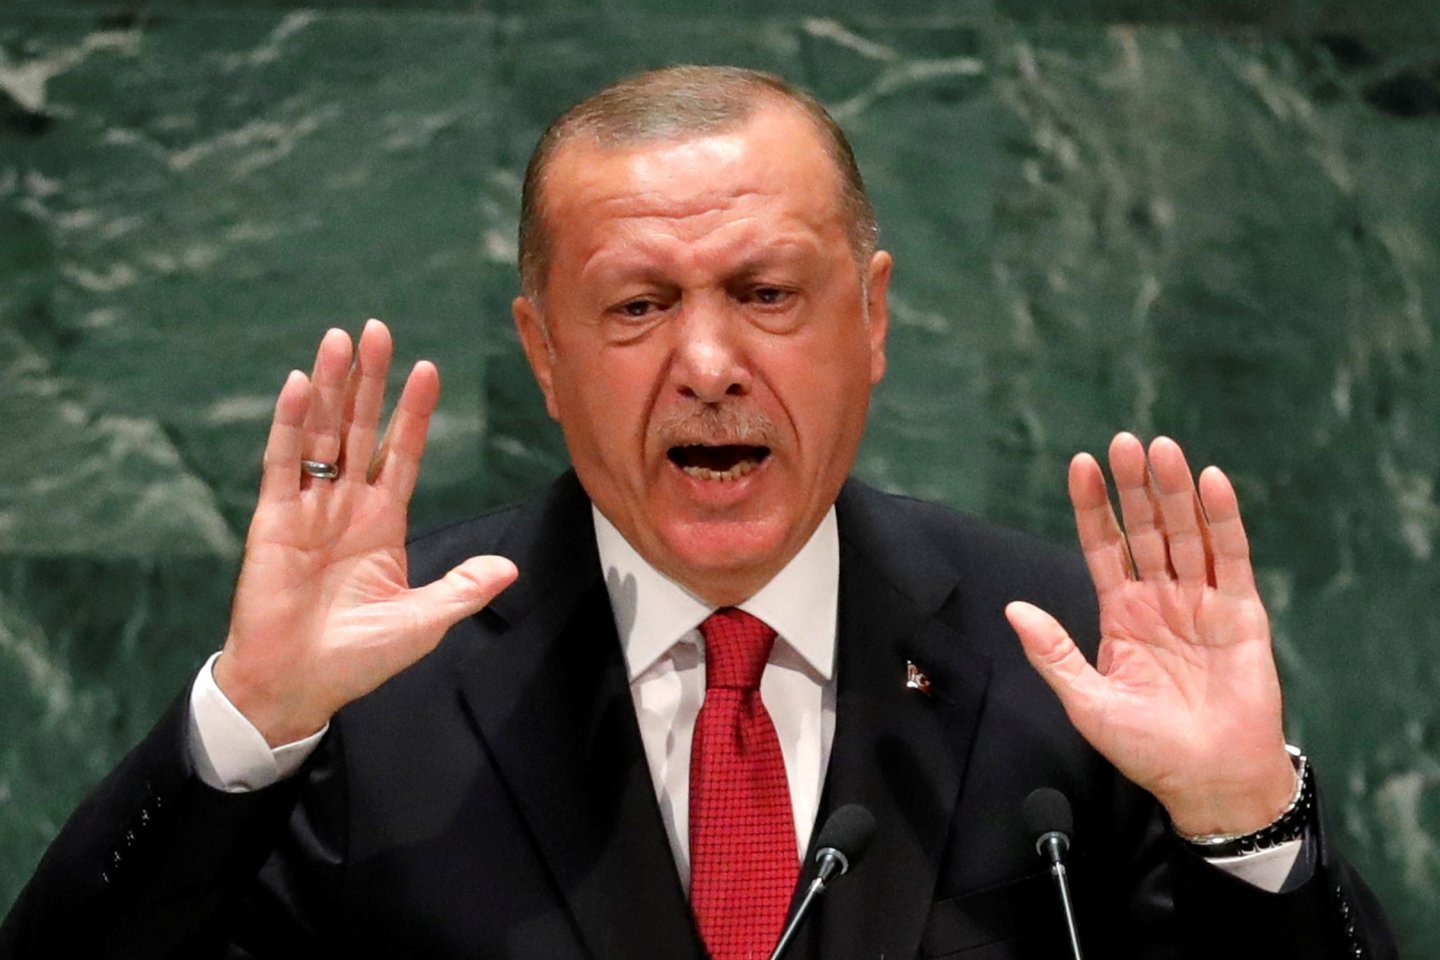   Turkijos prezidentas Recepas Tayyipas Erdoganas pirmadienį paskelbė, kad šalies kariuomenė yra pasirengusi bet kurią akimirką pradėti operacijas prieš kurdų kovotojus Sirijoje.<br> Reuters/Scanpix nuotr.